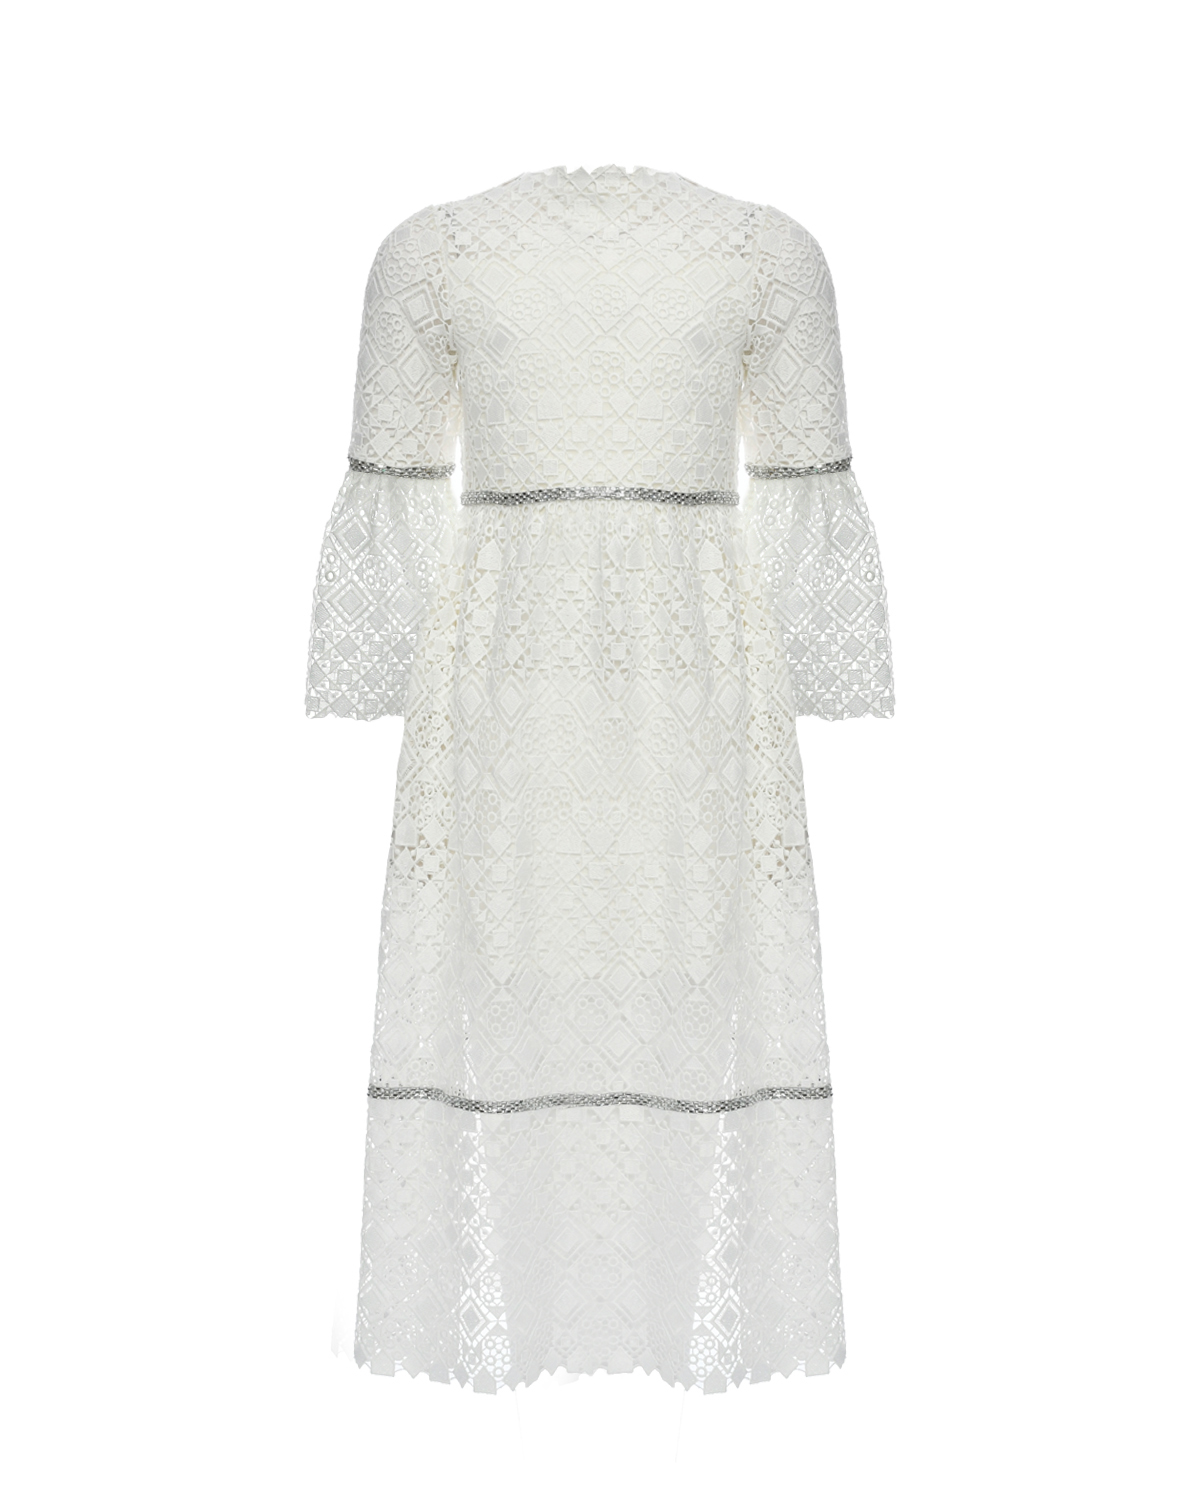 Кружевное платье с отделкой бисером Elie Saab, размер 128, цвет белый - фото 1